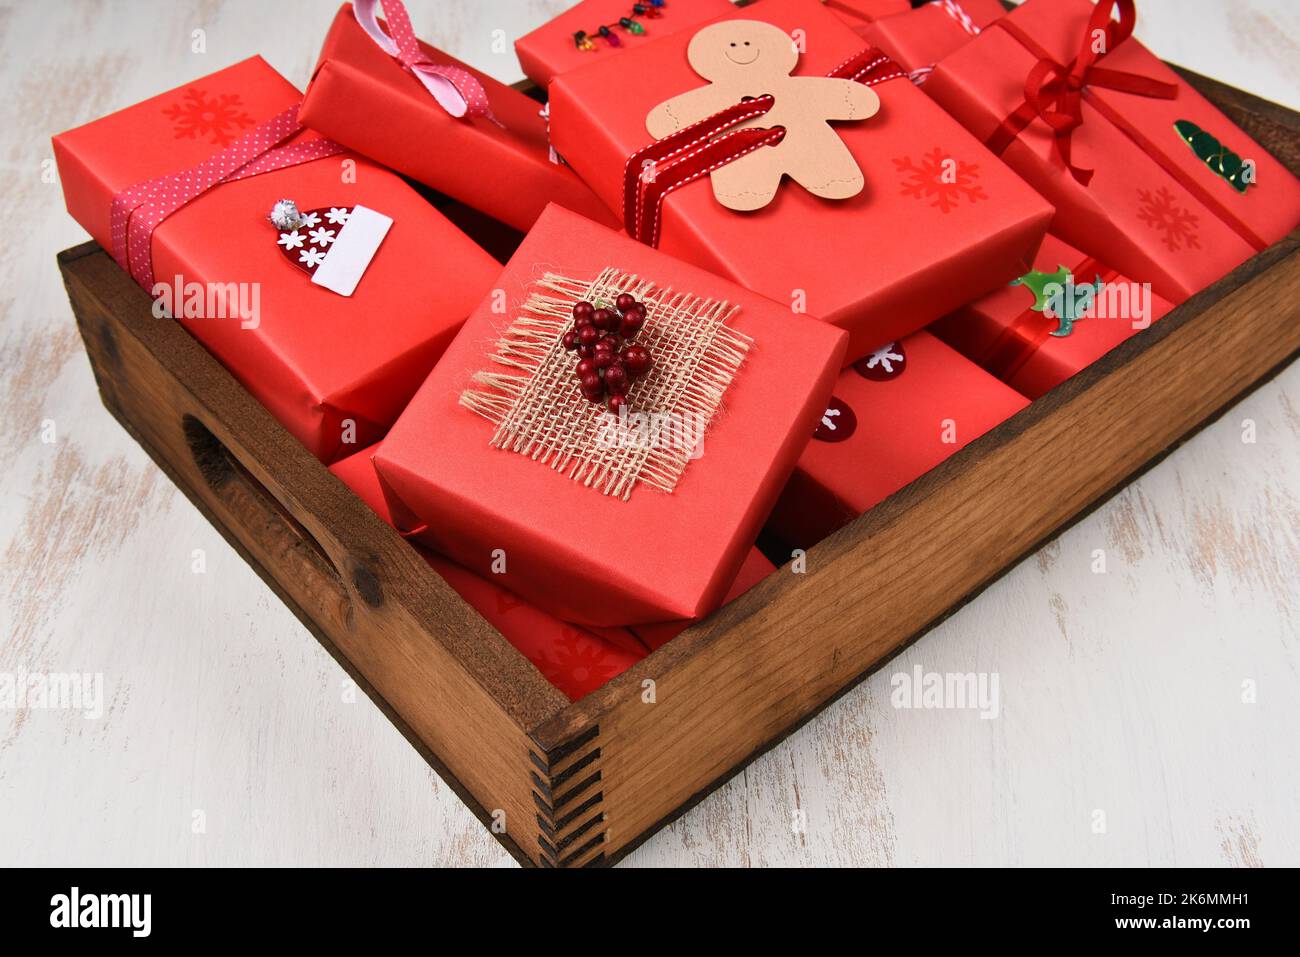 Weihnachtsgeschenke. Nahaufnahme von Geschenken, eingewickelt und in rotem Papier in einer dunklen Holzkiste dekoriert. Stockfoto